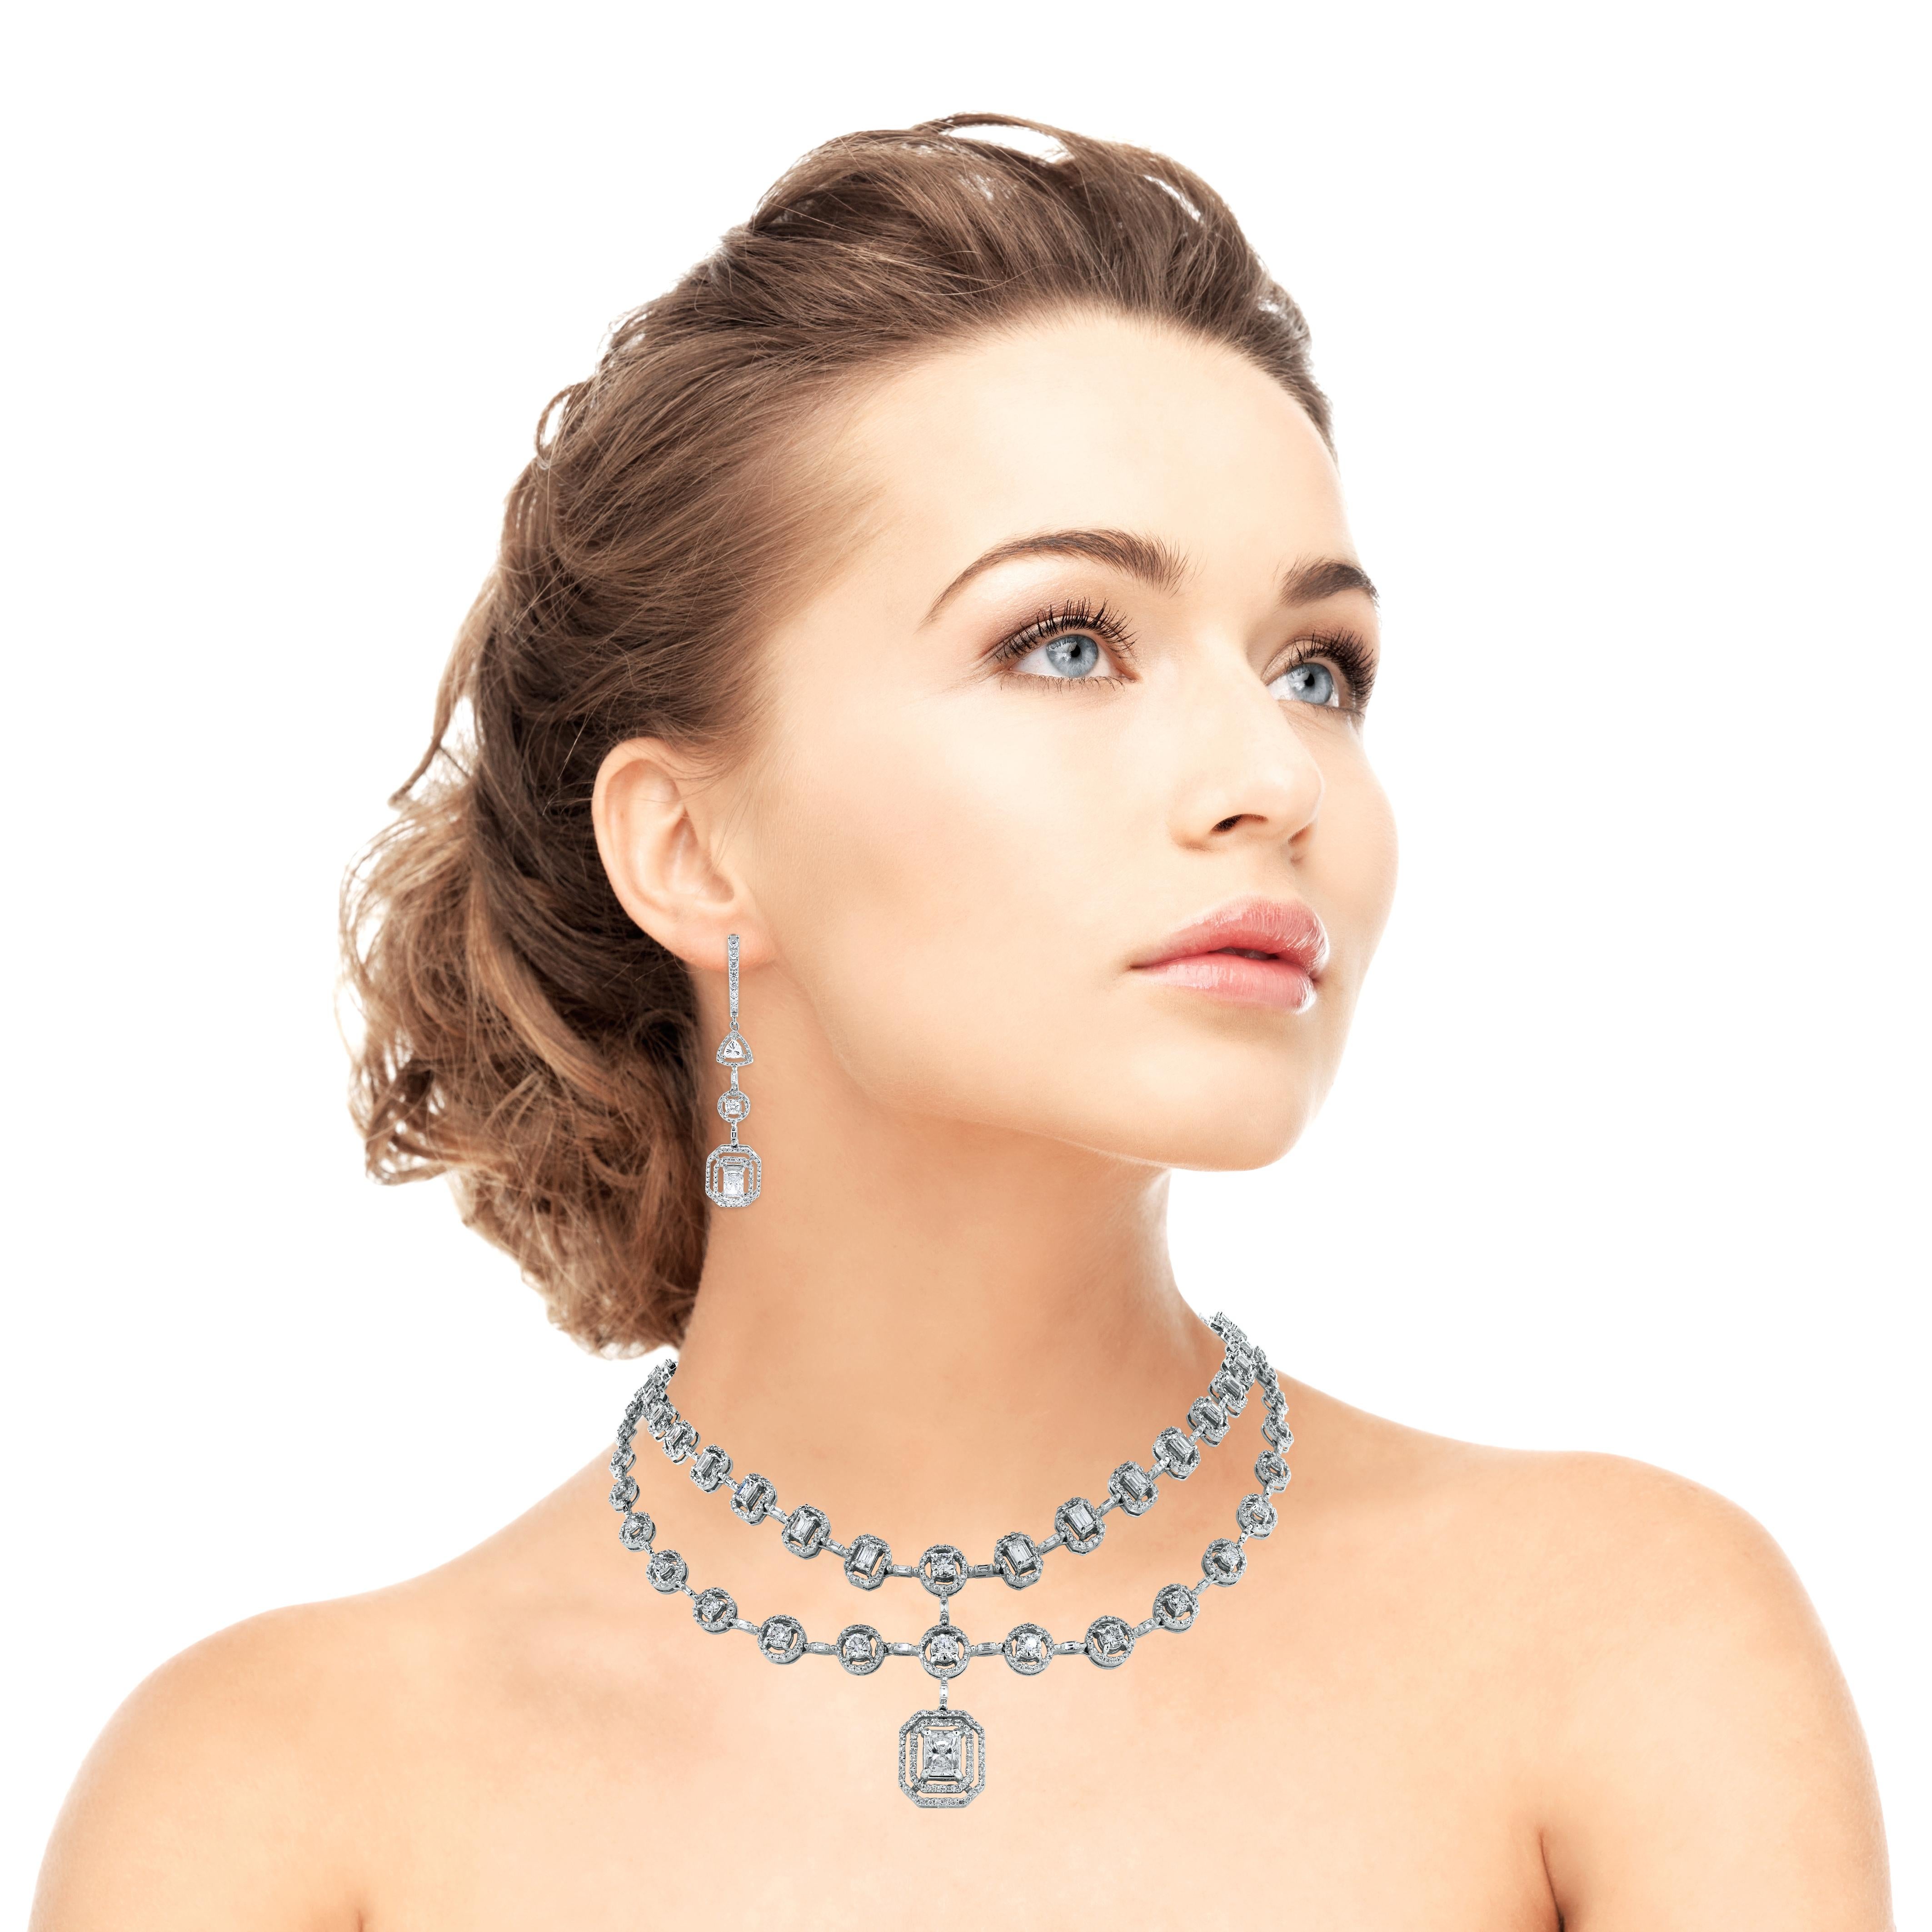 Le collier et les boucles d'oreilles Beauvince Sansa Diamond sont délicats et sensuels, mais aussi audacieux et énigmatiques. Ce magnifique collier à double brin est orné d'un diamant radiant de 1,02 carat en son centre. 

Formes de diamants :